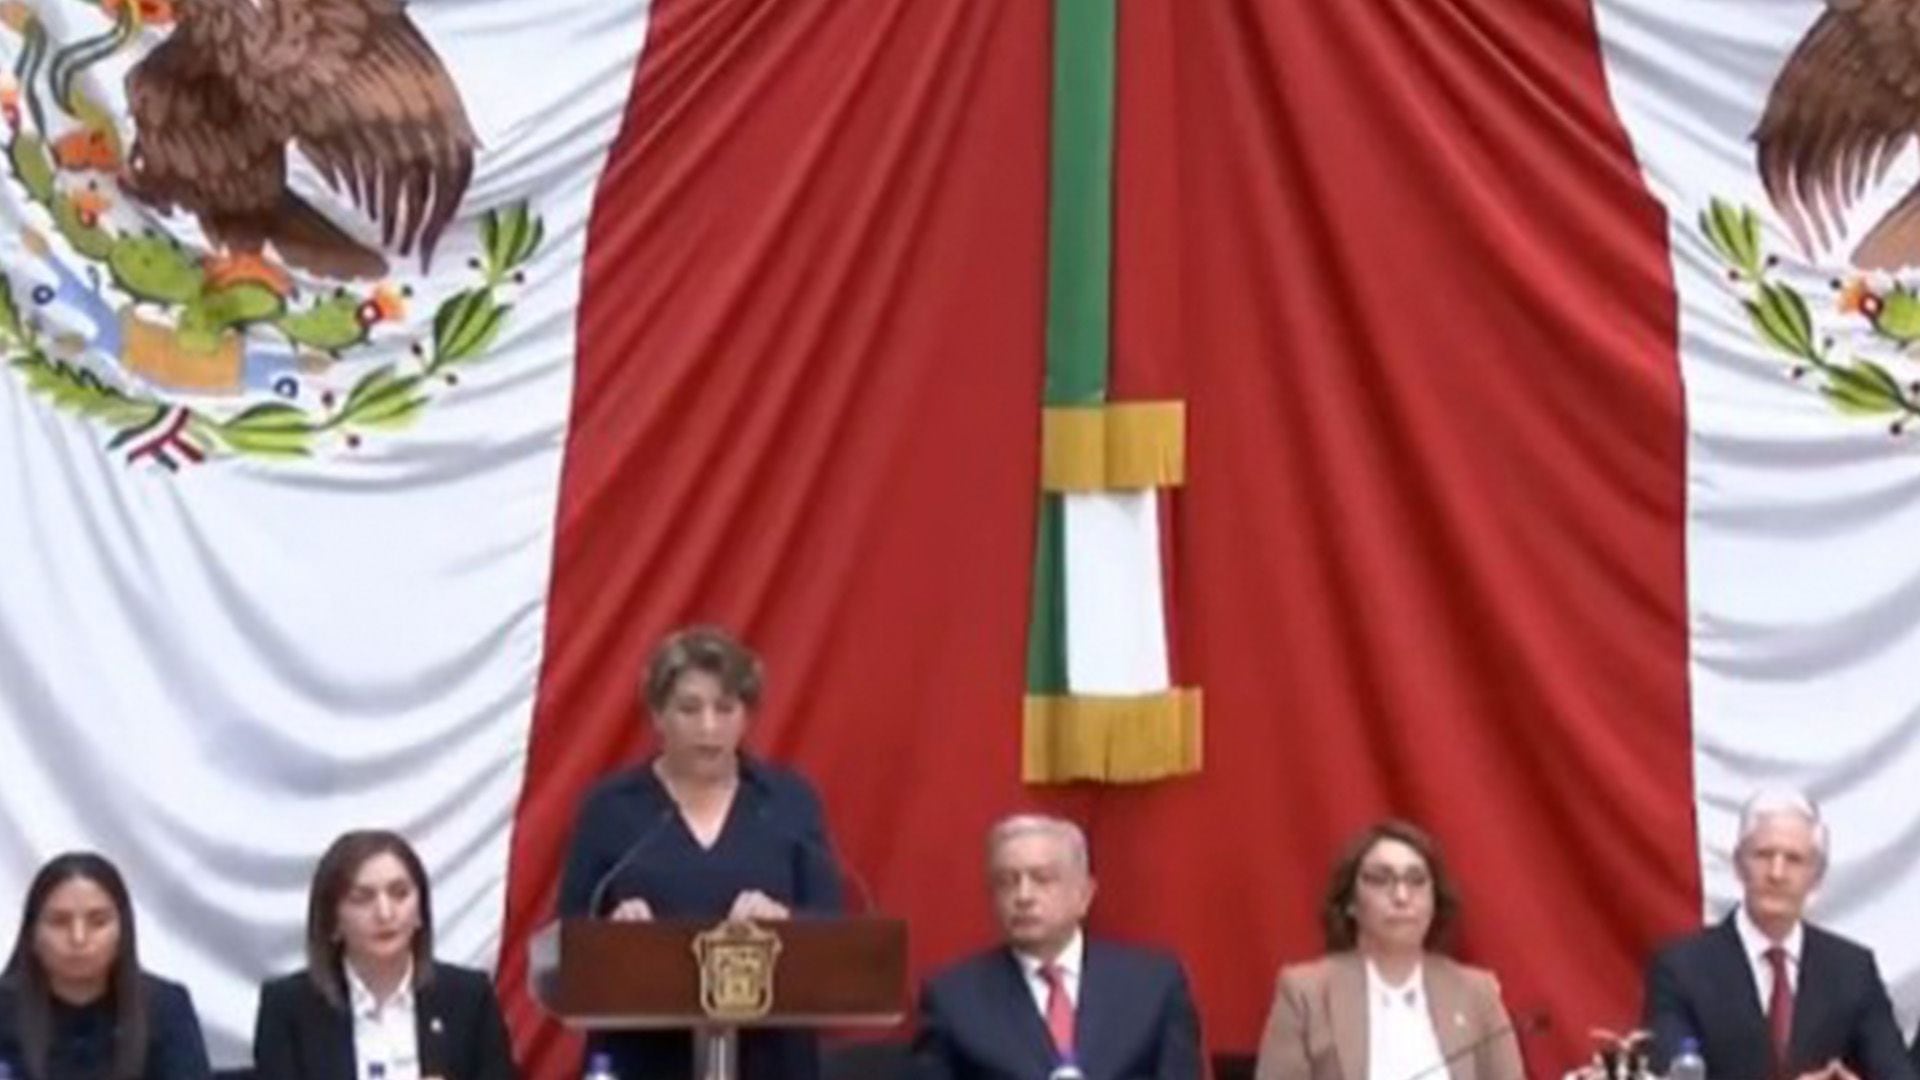 Delfina Gómez, governor of the State of Mexico (Screenshot)